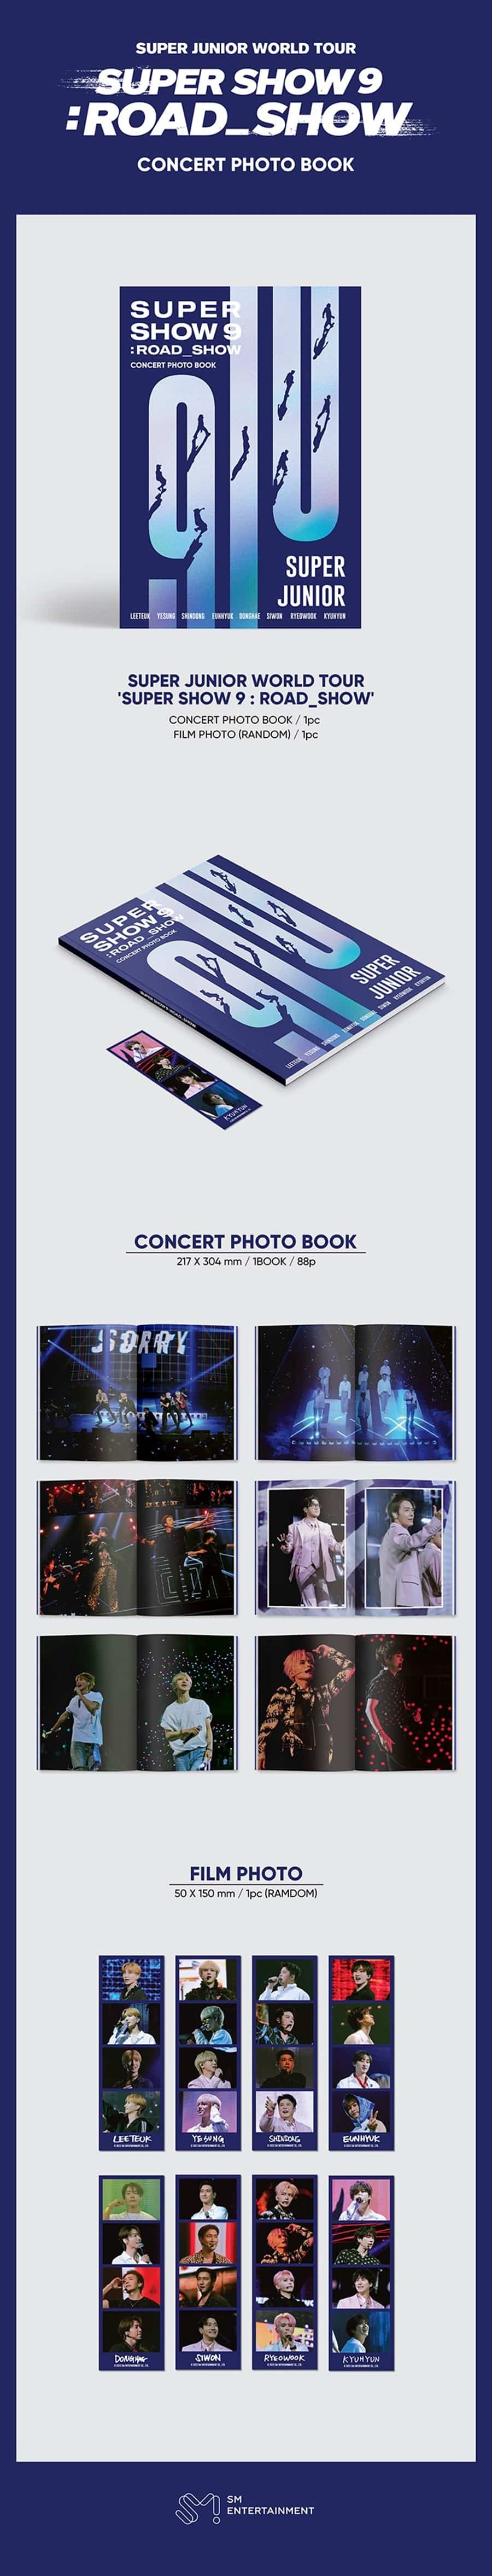 super-junior-super-show-9-road-show-concert-photo-book-wholesales